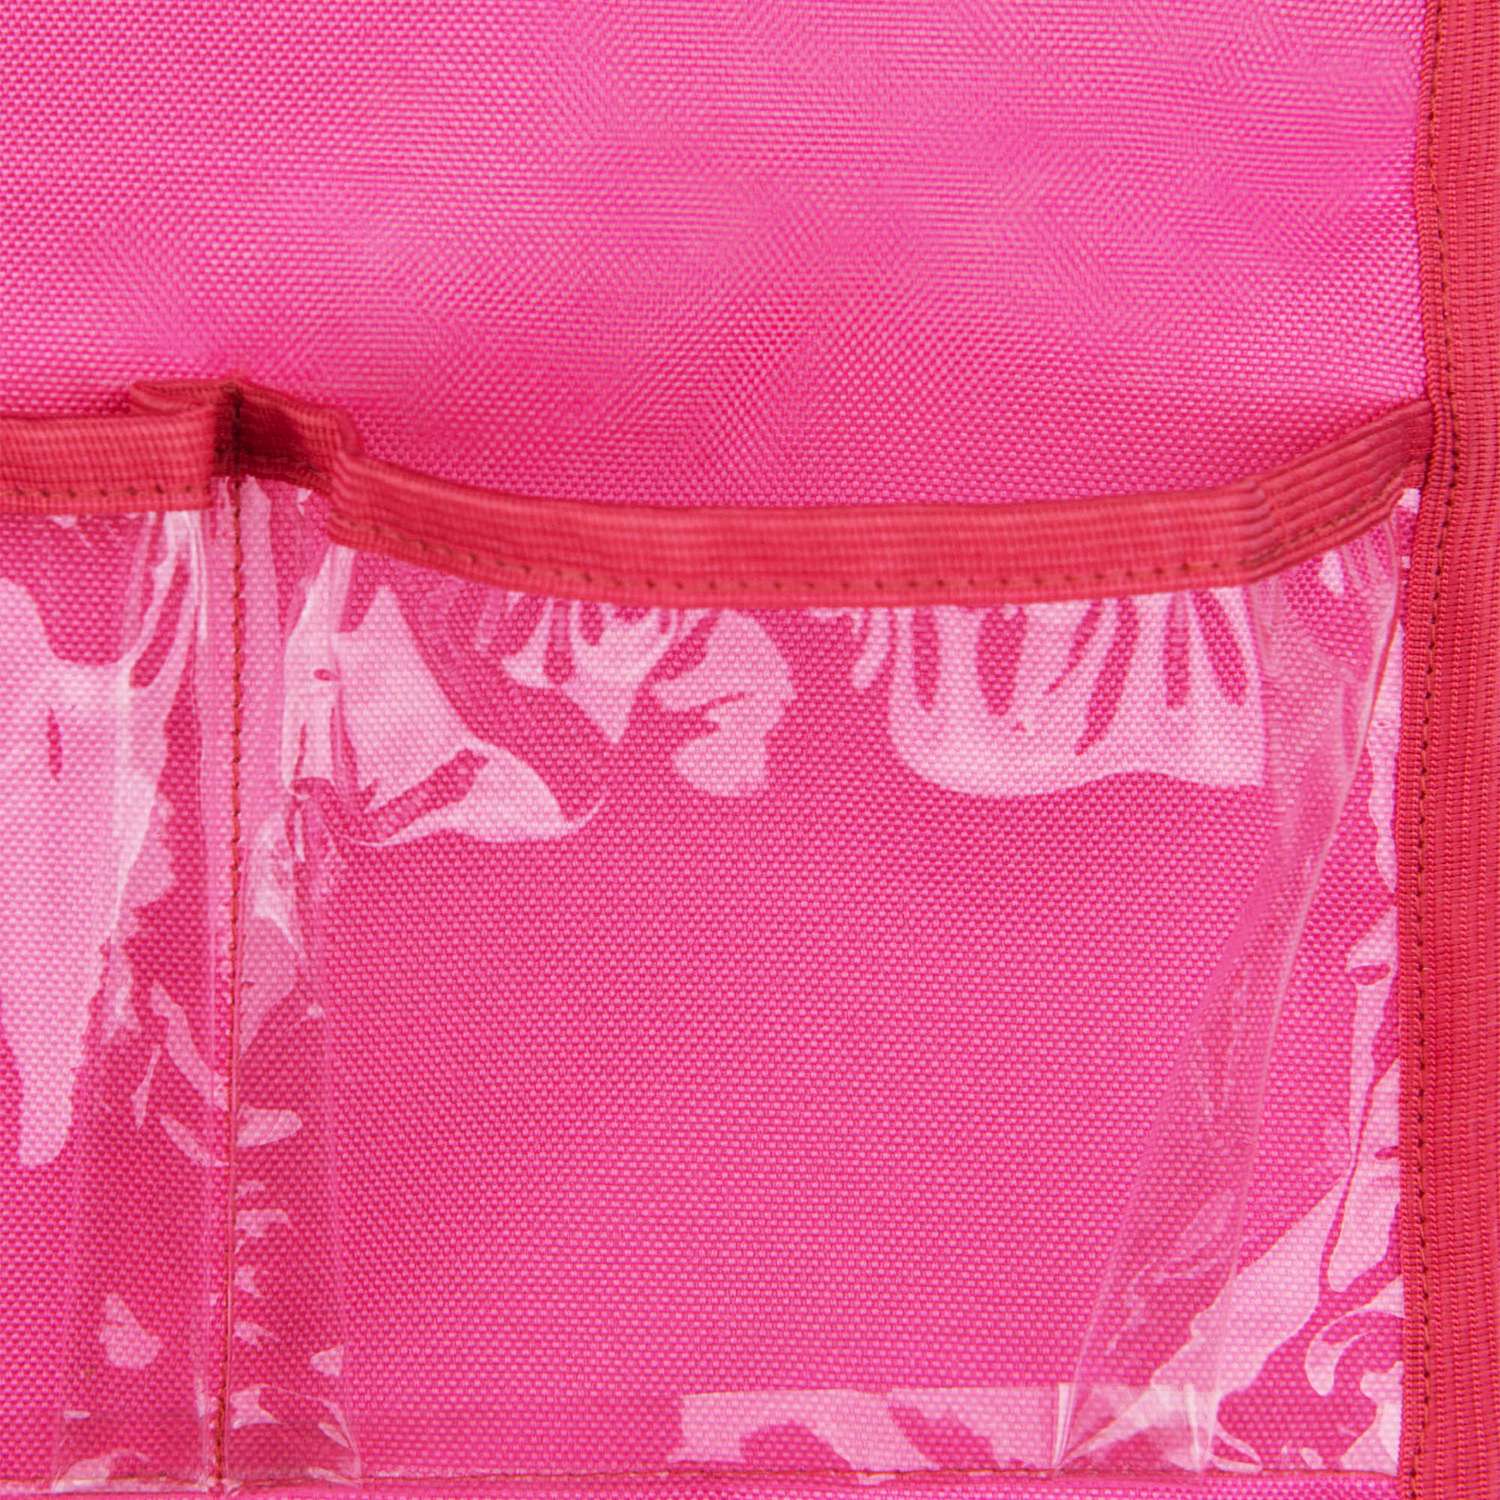 Органайзер Safekids c прозрачными кармашками в детский сад на шкафчик - фото 5